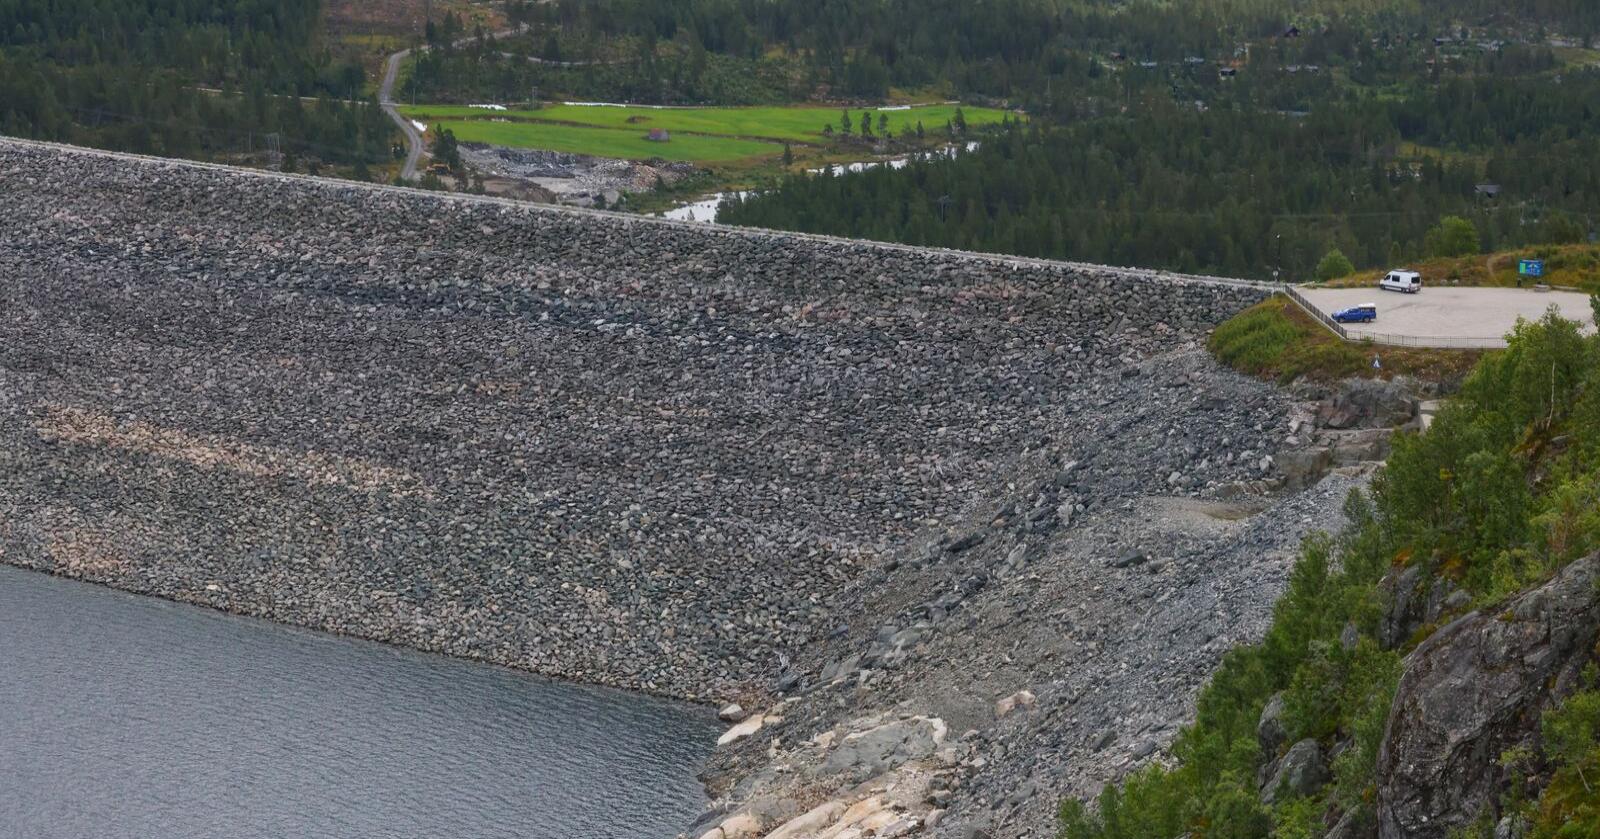 Bykle: Lav vannstand ved Vatnedalsdammene. Nå vil utvalg frata Bykle og andre kommuner inntekt av naturressursene. Foto: Ørn E. Borgen / NTB